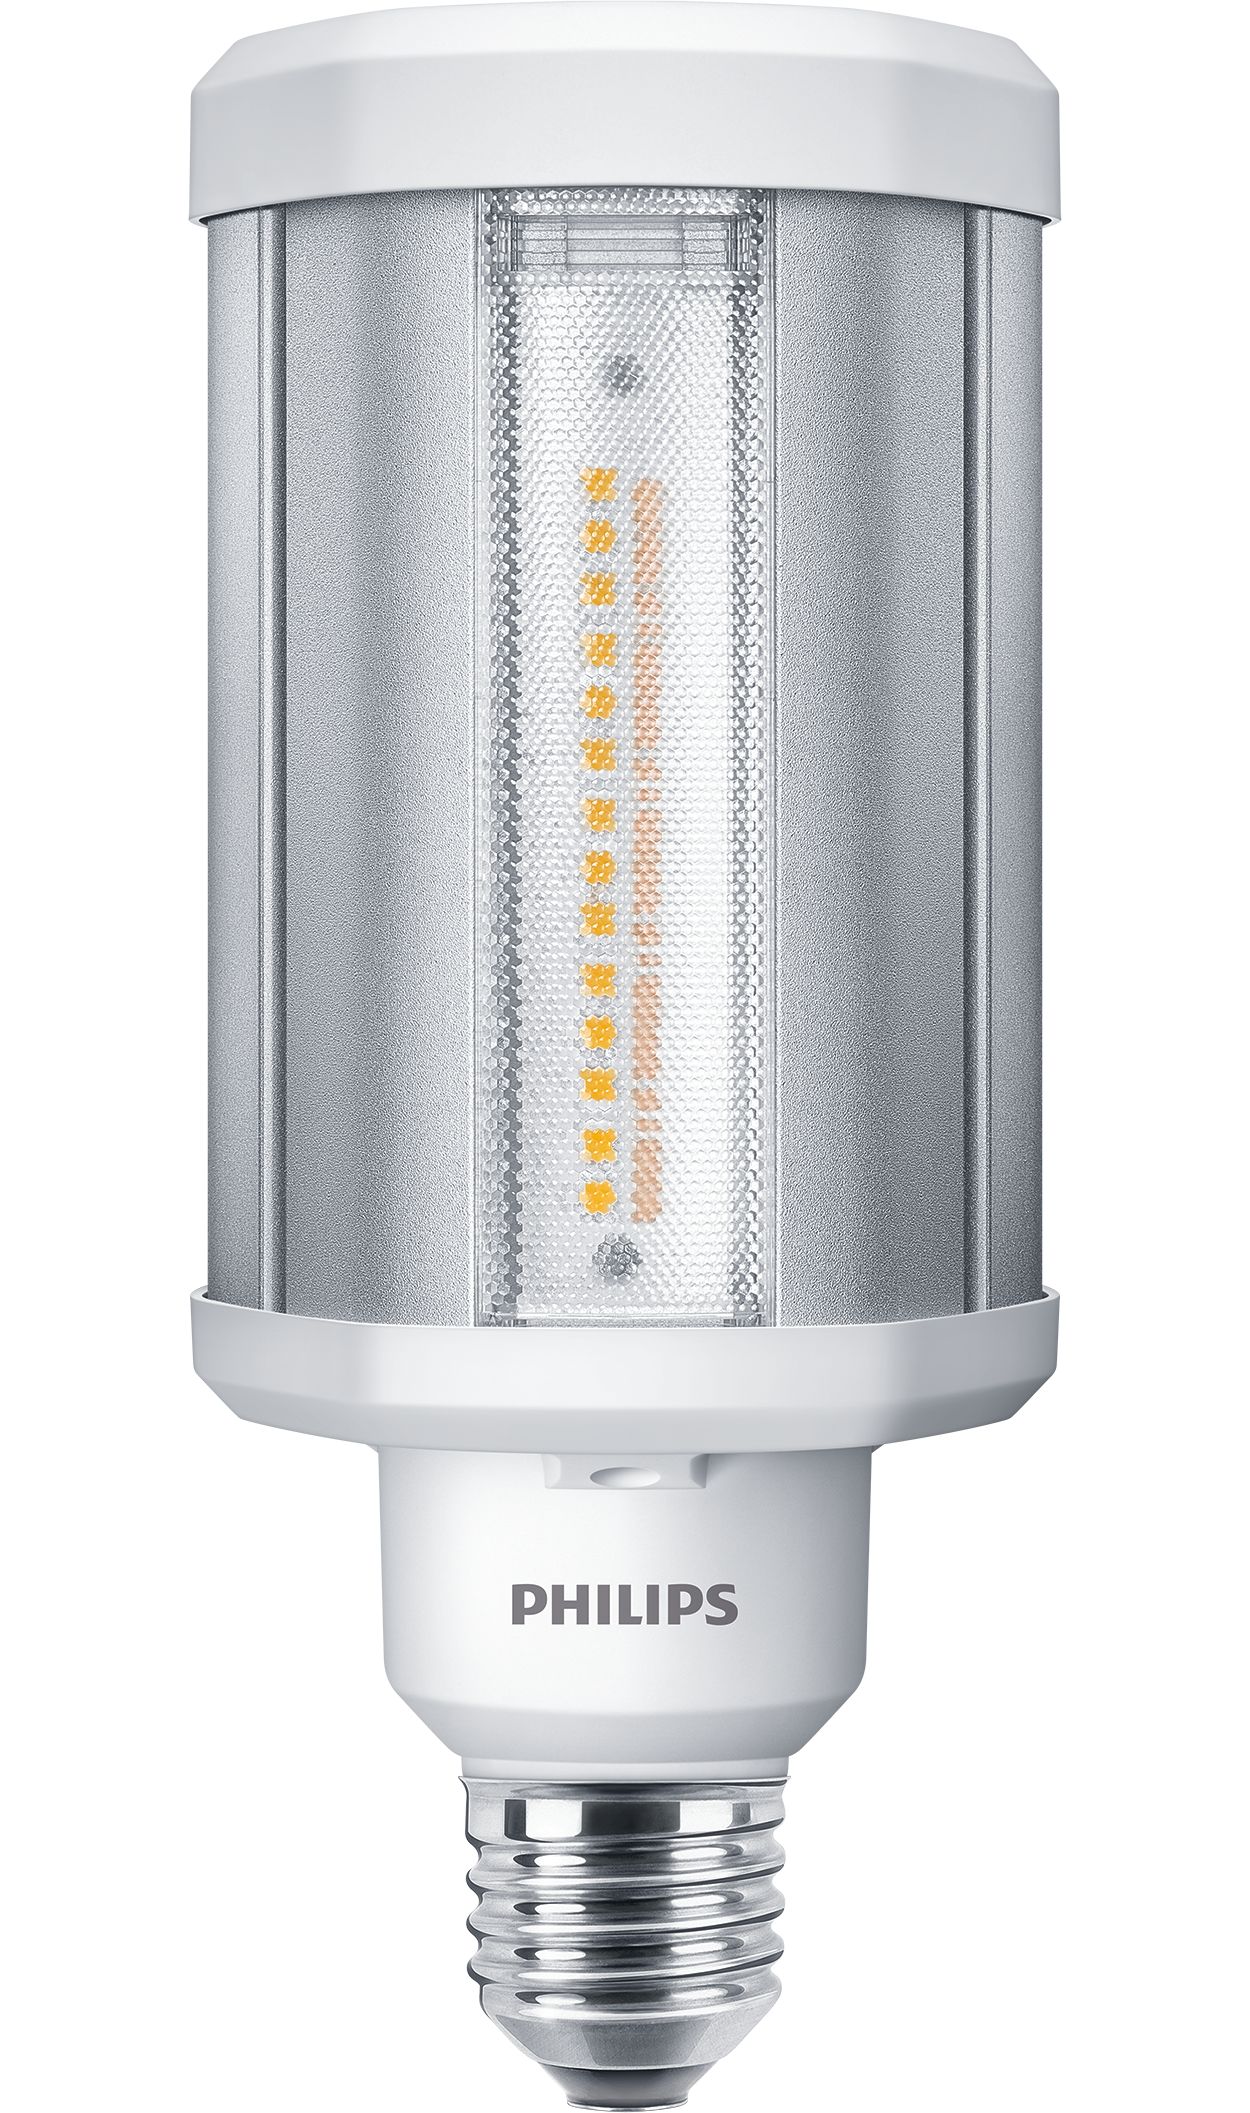 Veilig ademen draai TForce LED HPL ND 28-21W E27 830 | 929002006102 | Philips lighting